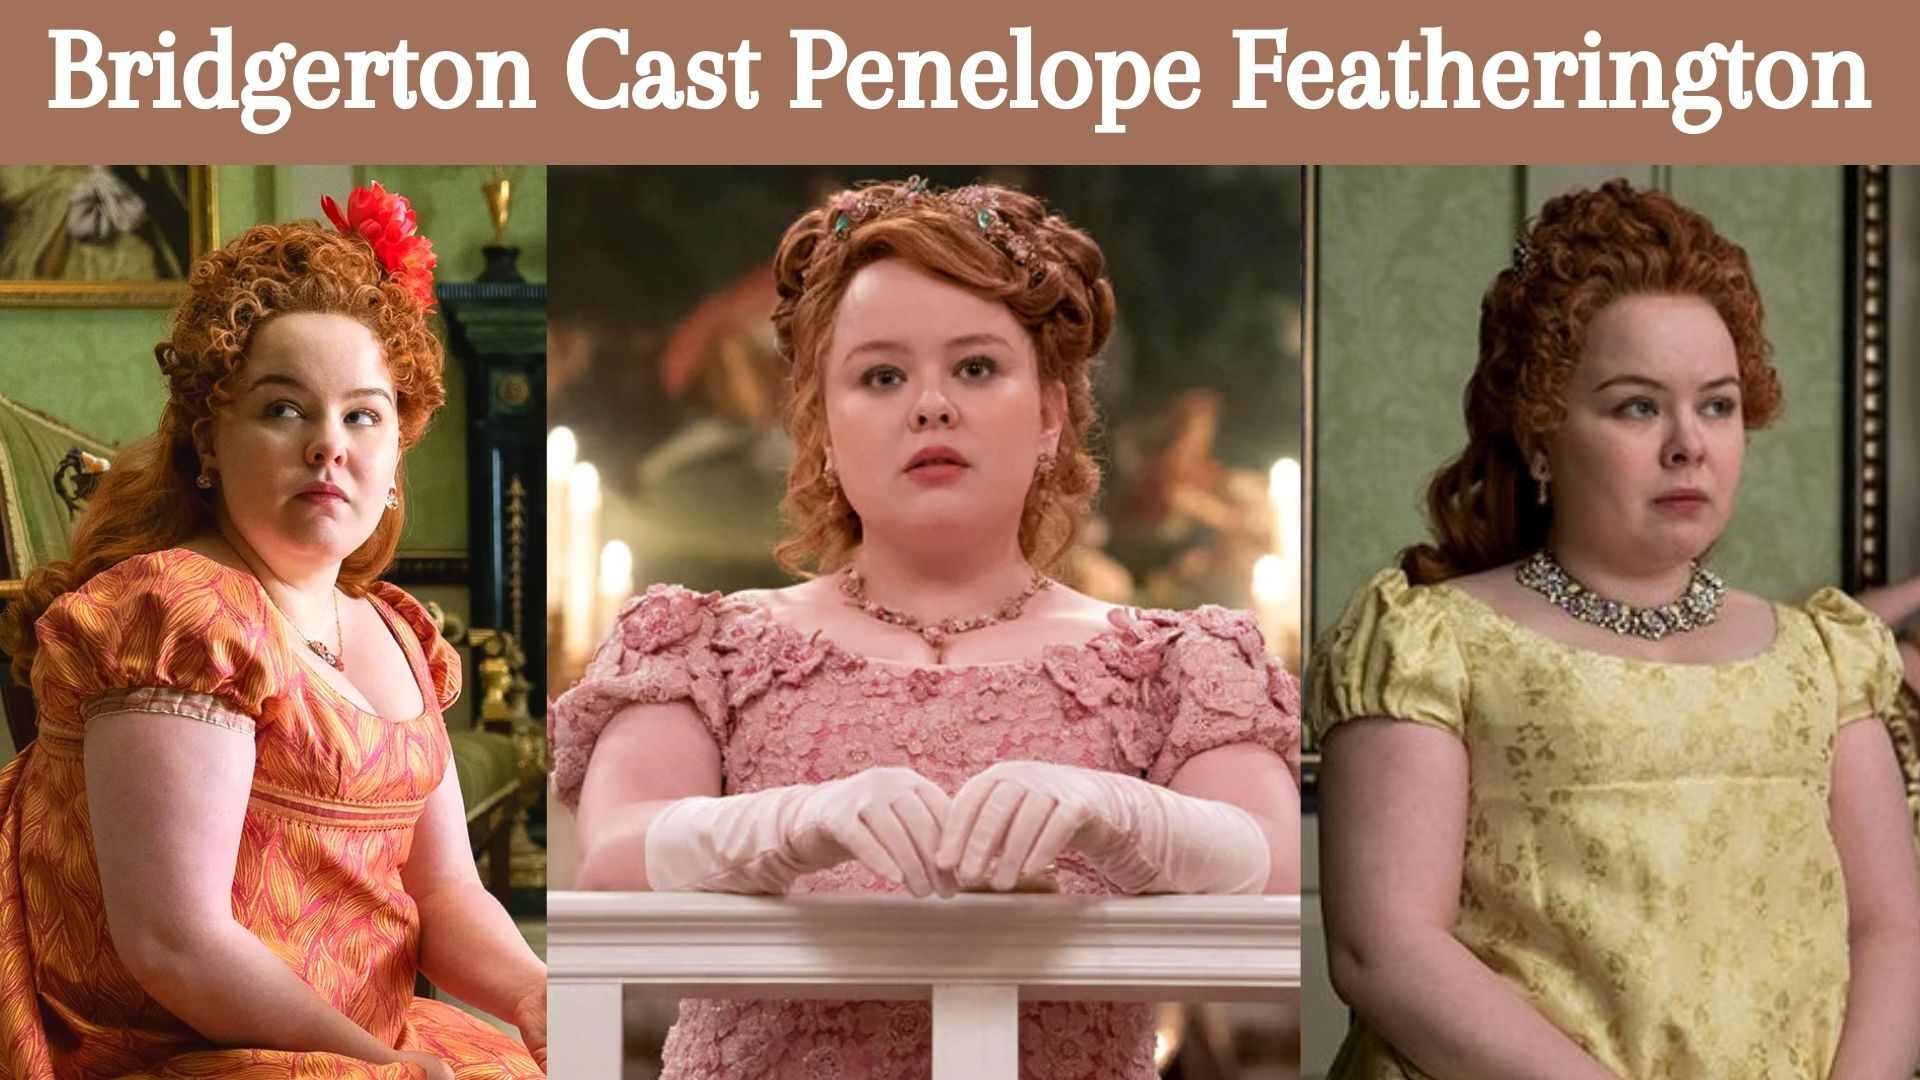 Bridgerton Cast Penelope Featherington Wallpaper and Images